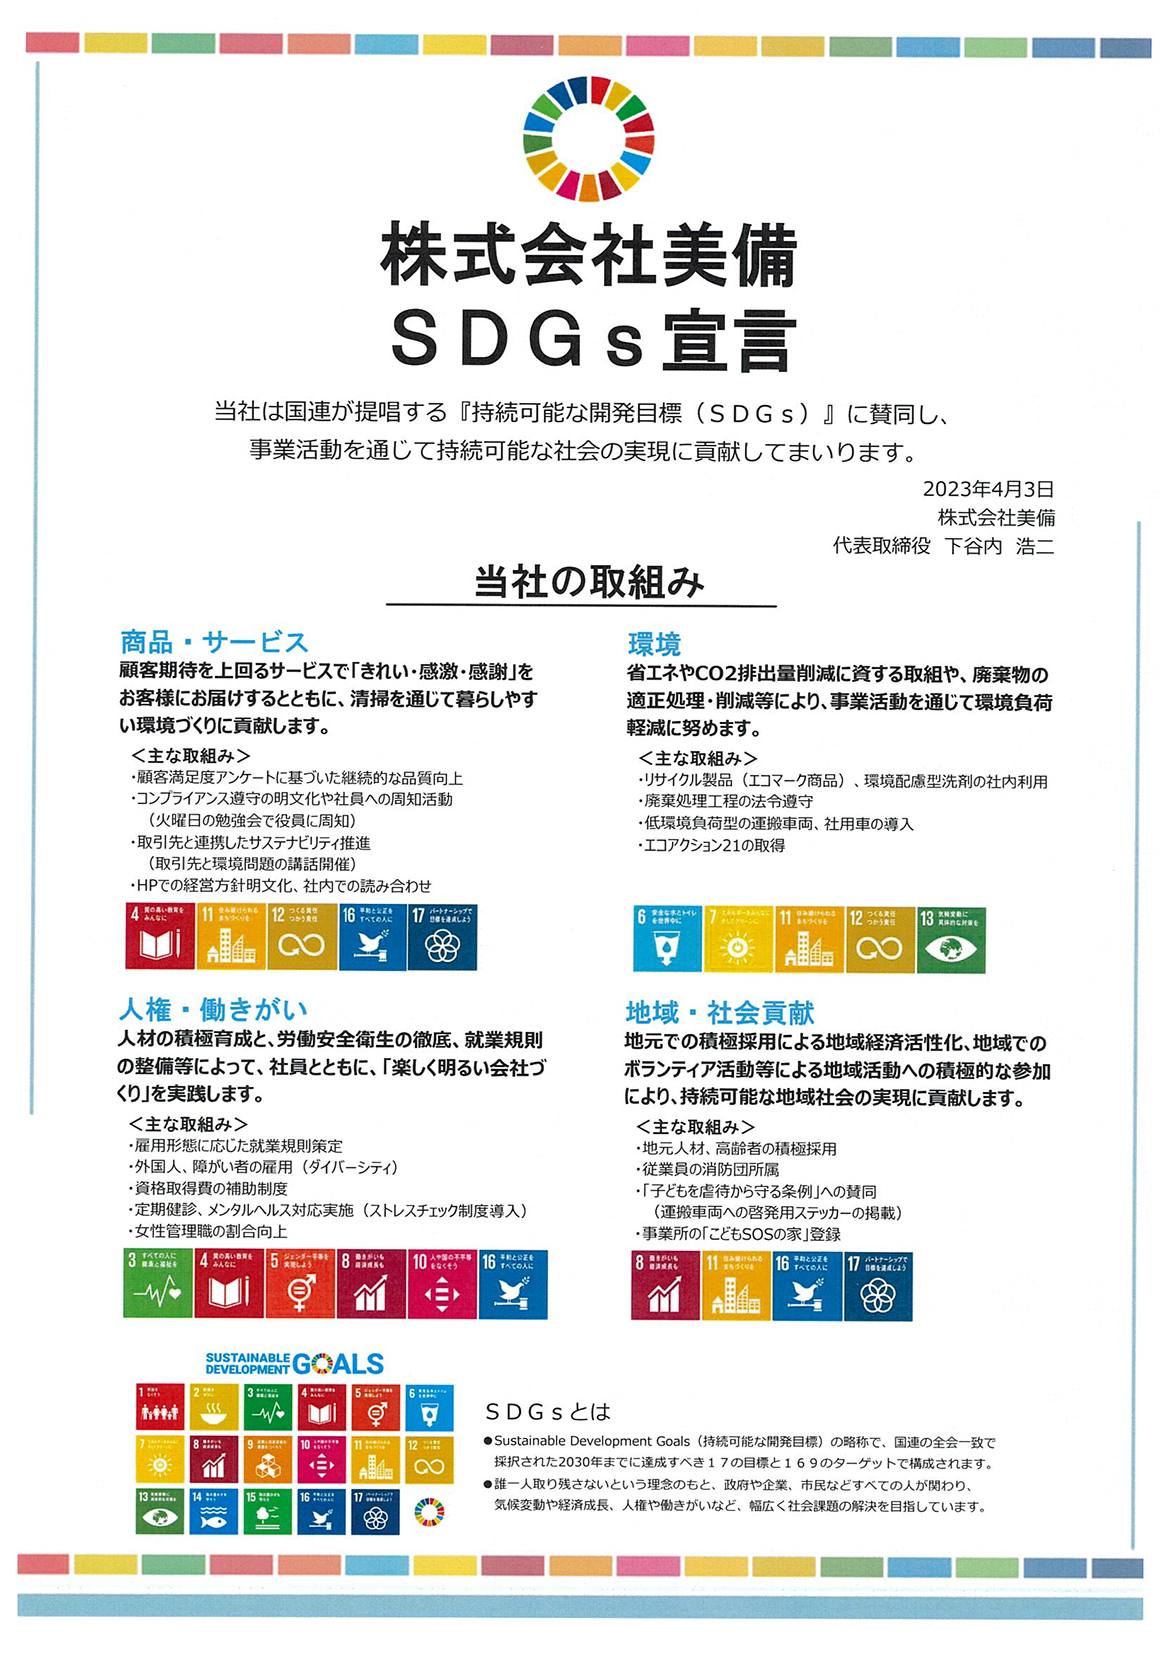 株式会社美備SDGs 宣言